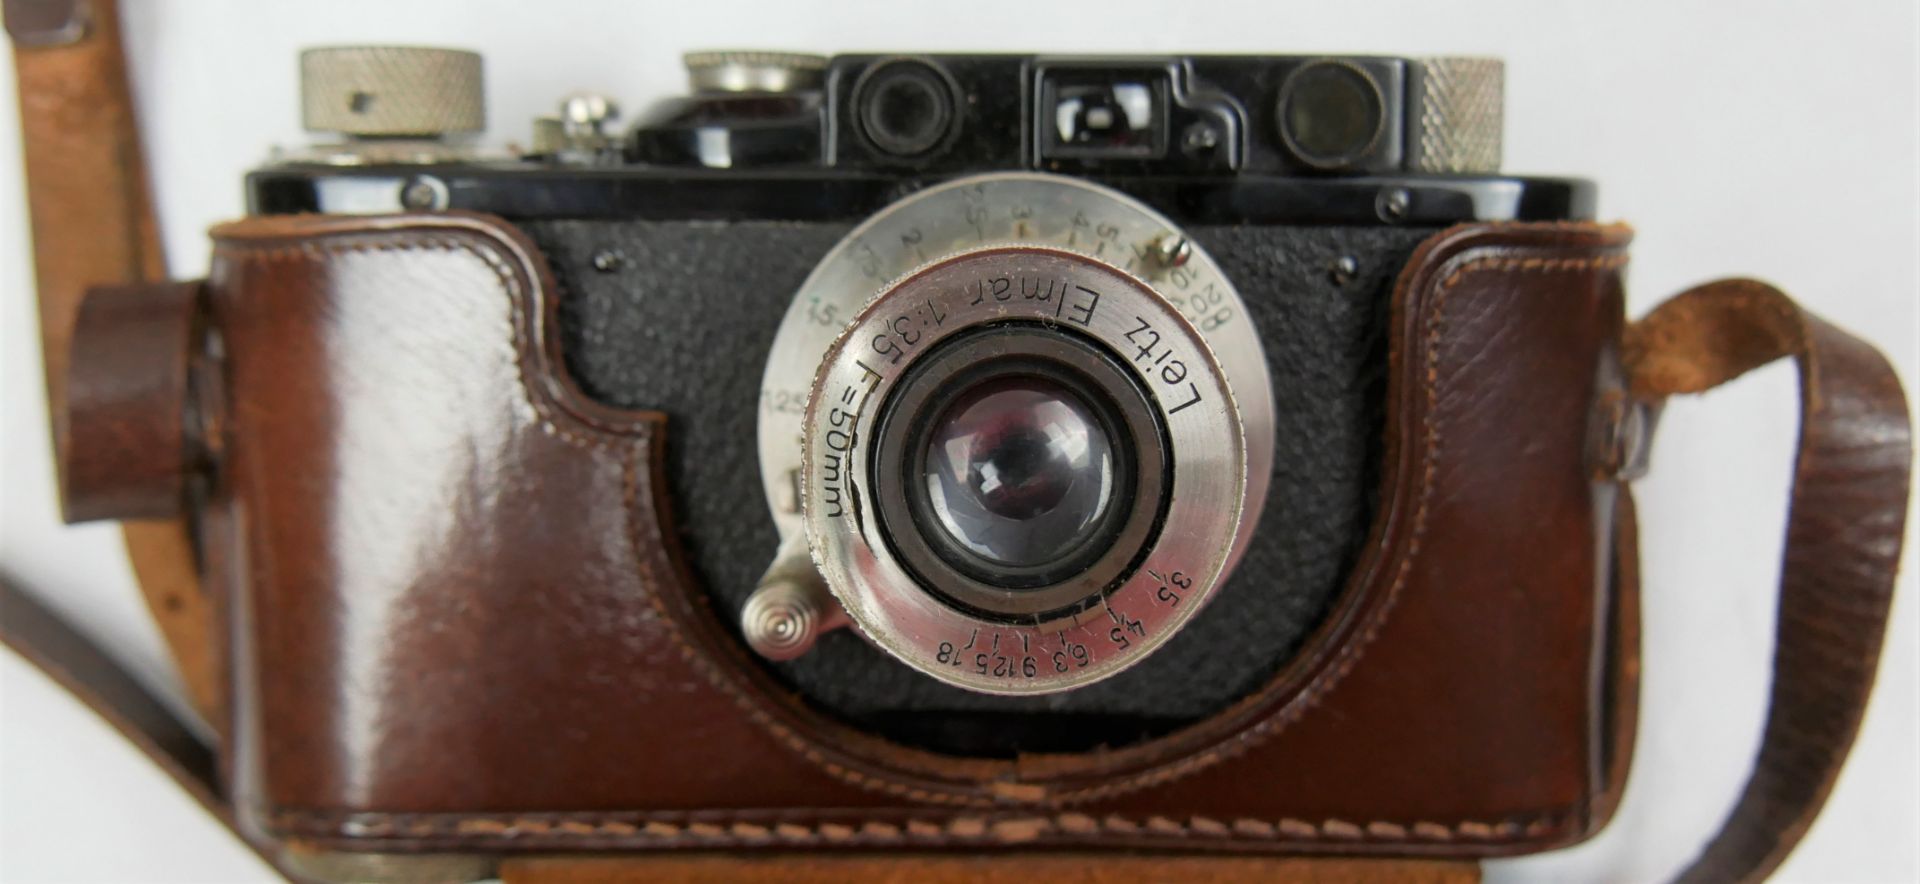 Leica Kamera Ernst Leitz Wetzlar D.R.F. No. 96727, Objektiv aussen beschädigt. In der Original - Image 4 of 4